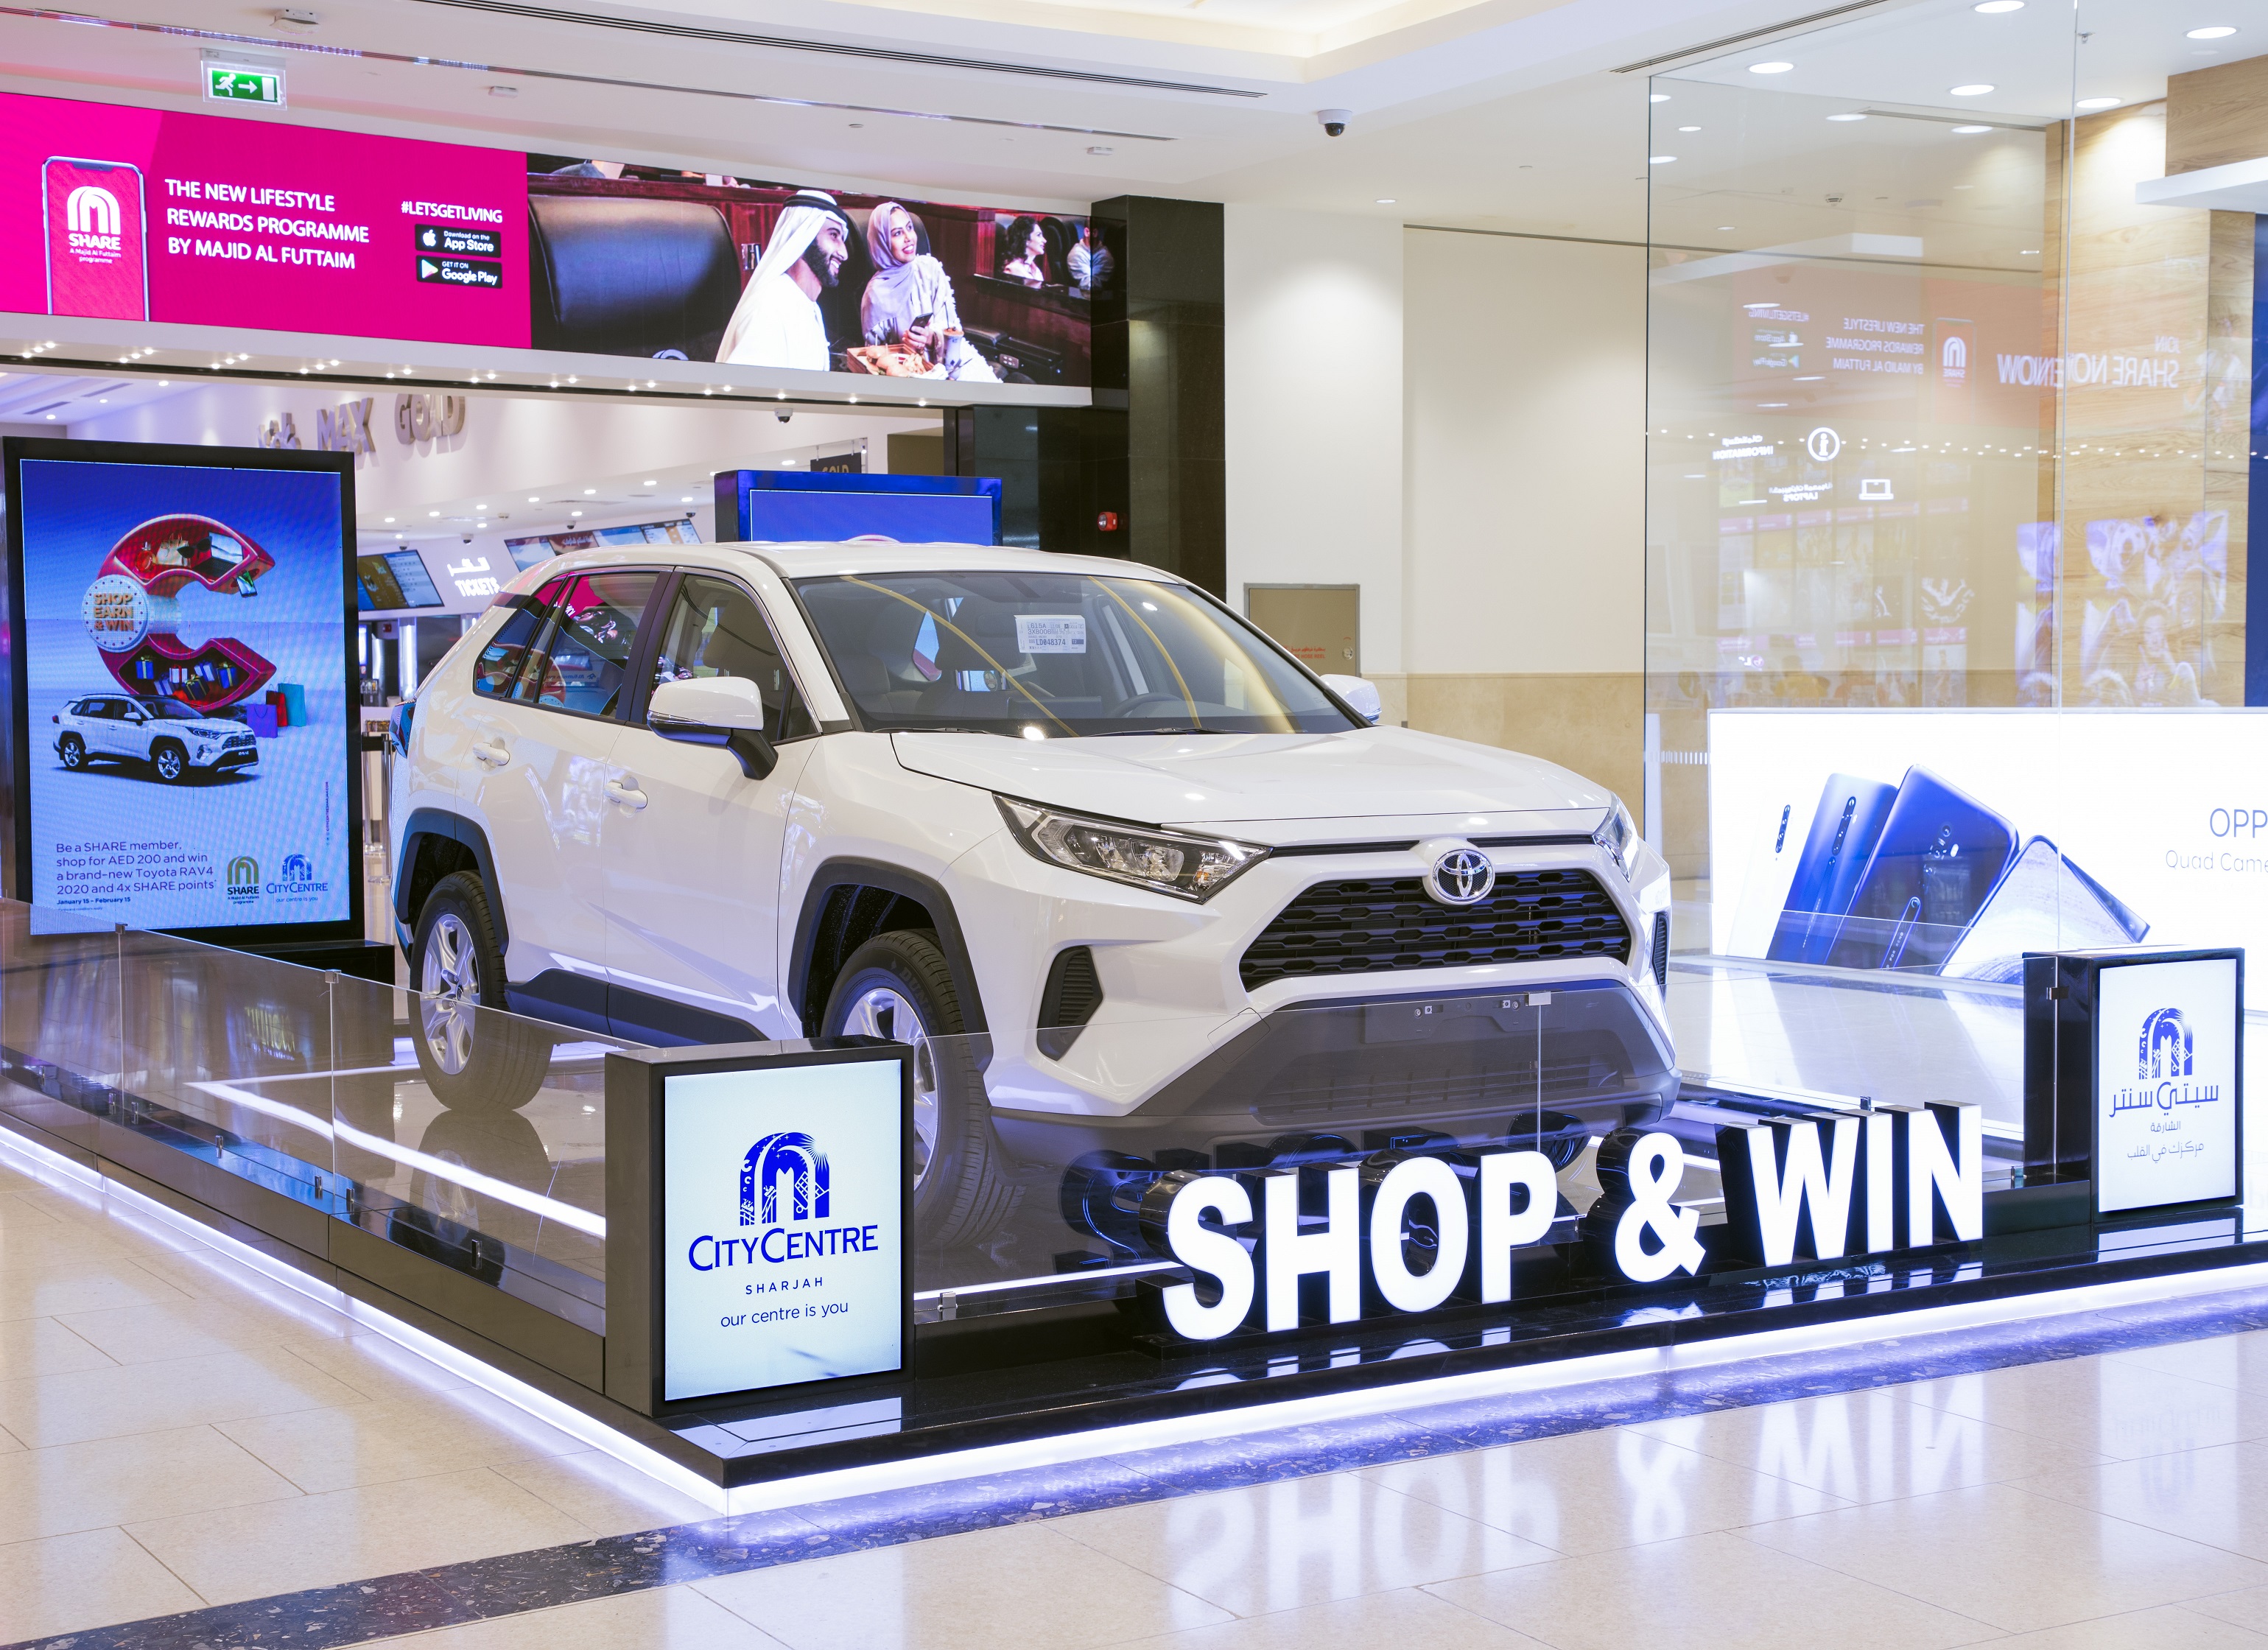 ‫3 سيارات جديدة بانتظار المتسوقين المحظوظين لدى مراكز تسوق "ماجد الفطيم" في الإمارات الشمالية‬